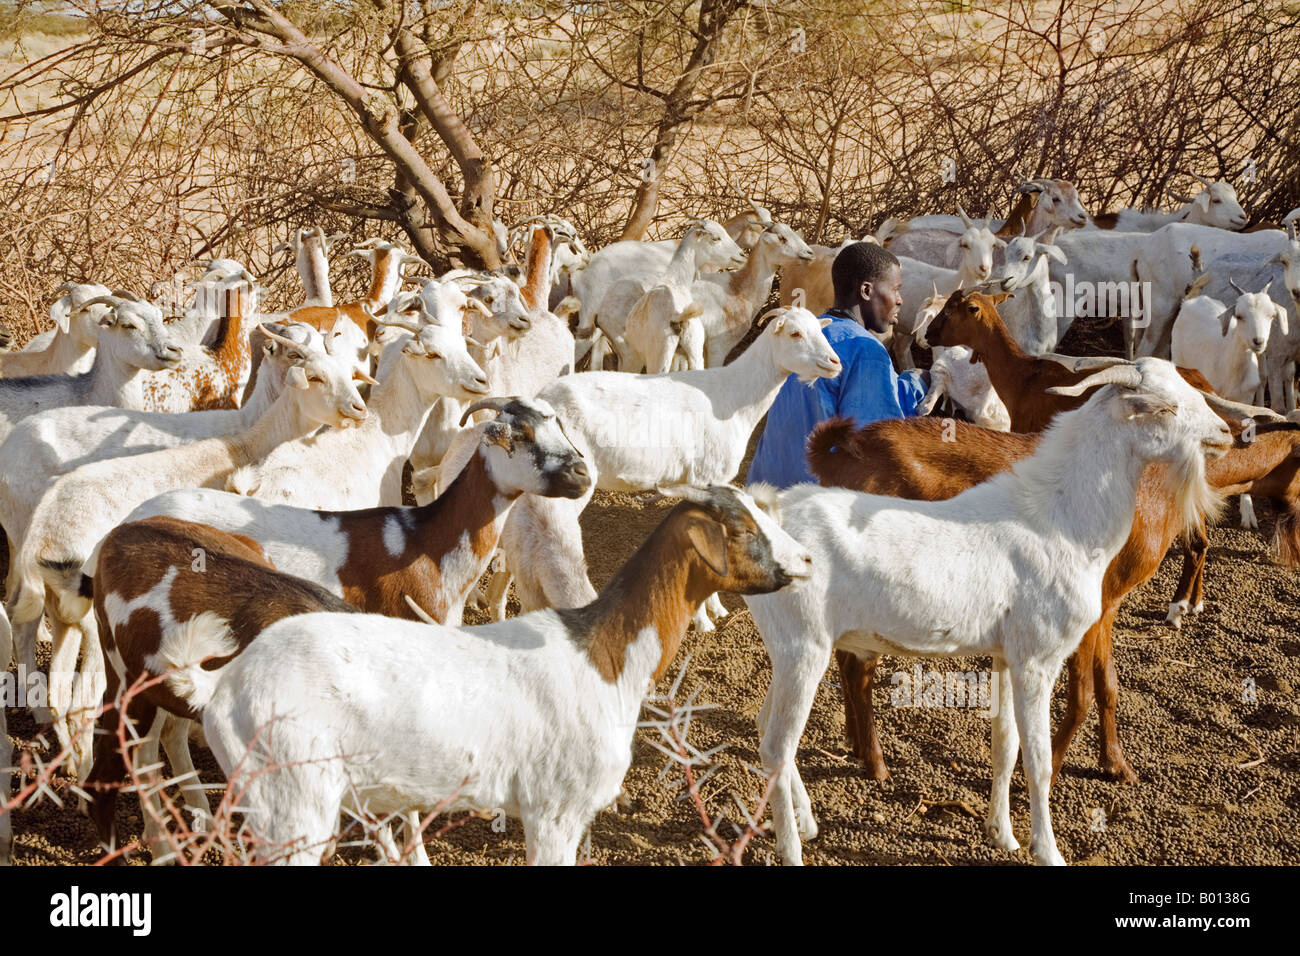 Mali, Tombouctou. Bella un pâtre trait les chèvres de son employeur touareg. Banque D'Images